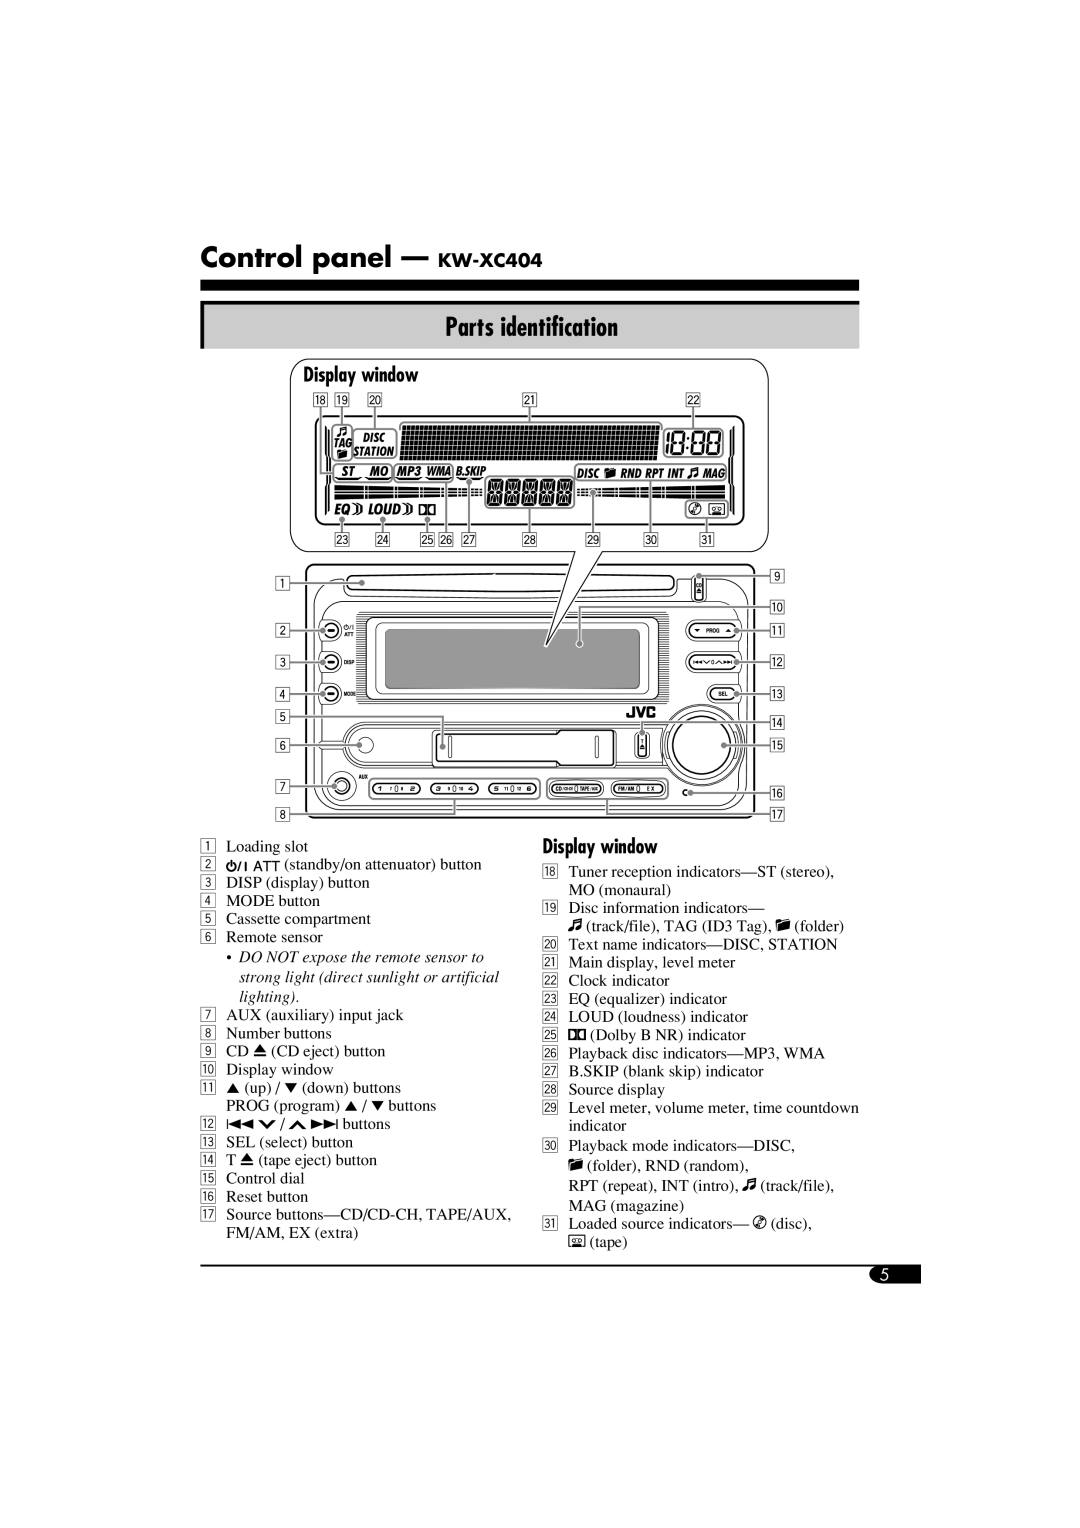 JVC W-XC406, KW-XC405 manual Control panel - KW-XC404, Parts identification, Display window 